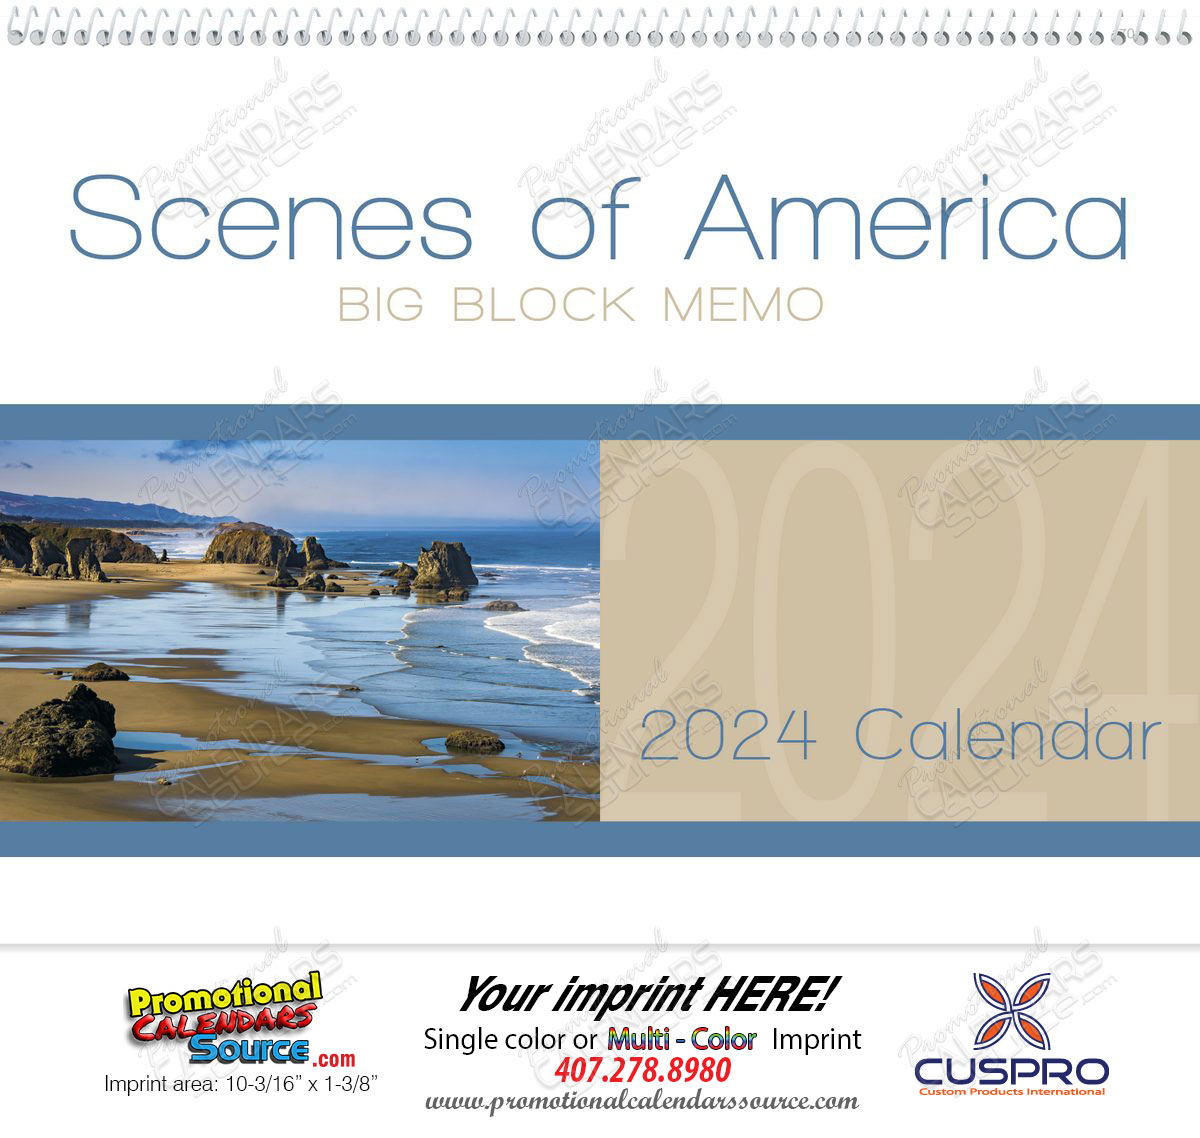 Scenes of America Big Block Memo Promotional Calendar 